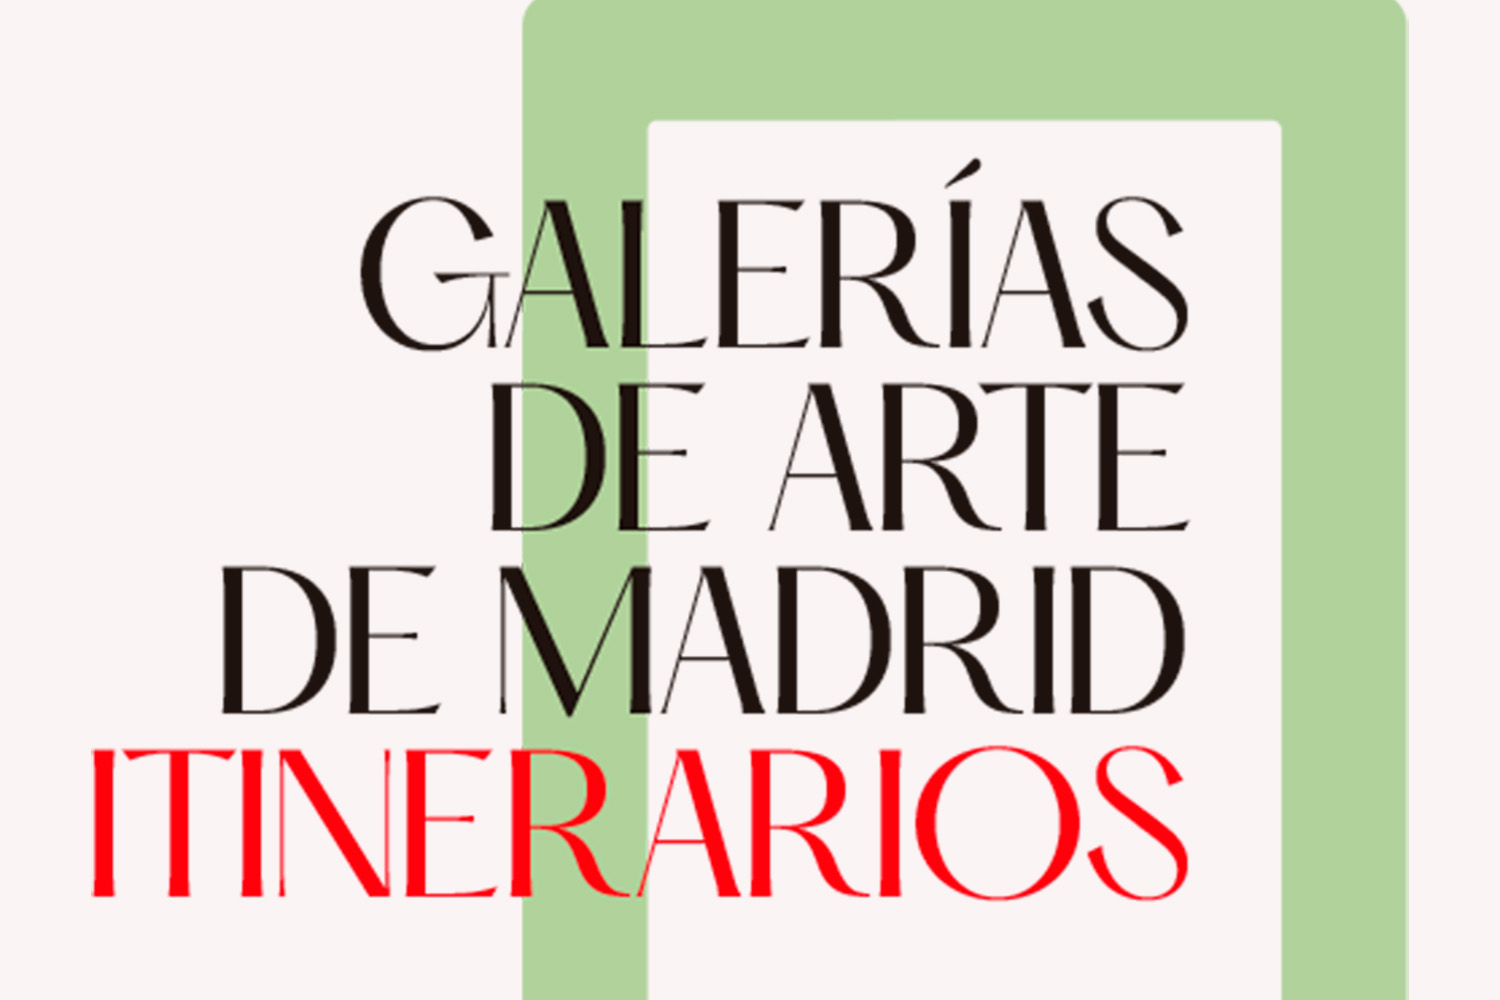 Galerías de arte de Madrid - Itinerarios